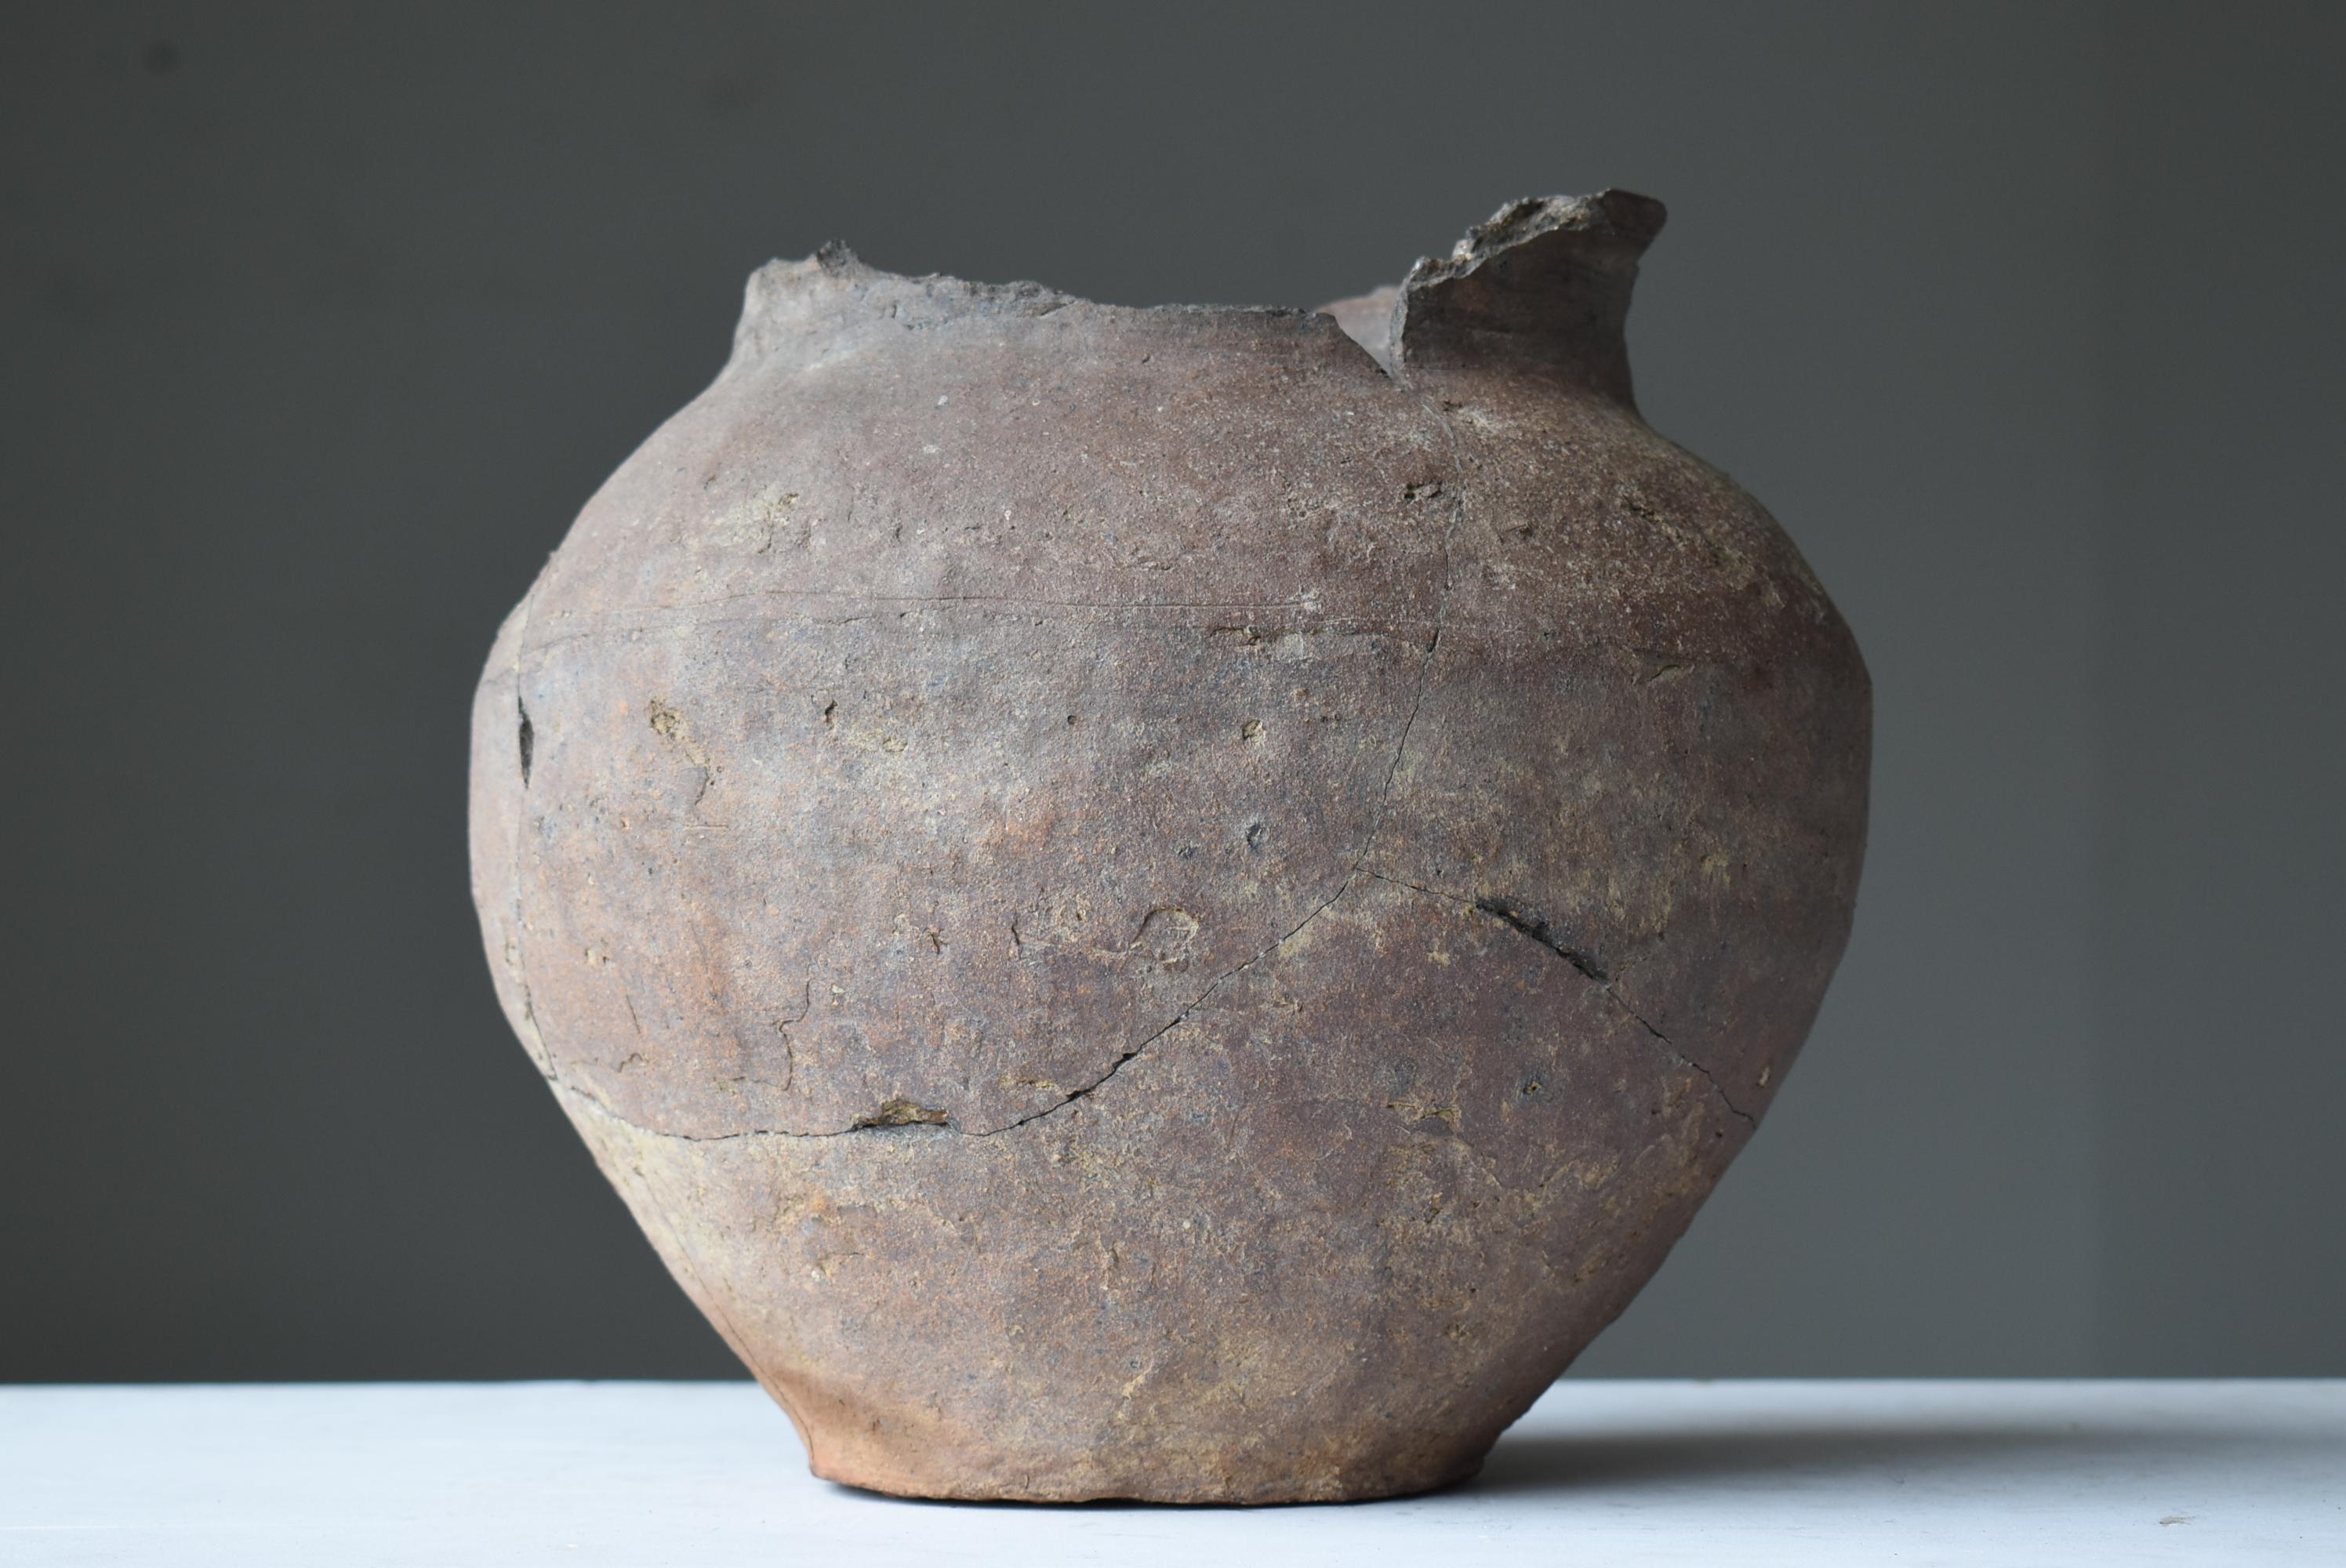 Japanese Antique Wabisabi Pottery Vase / Flower Vase Vessel Jar Tsubo 6